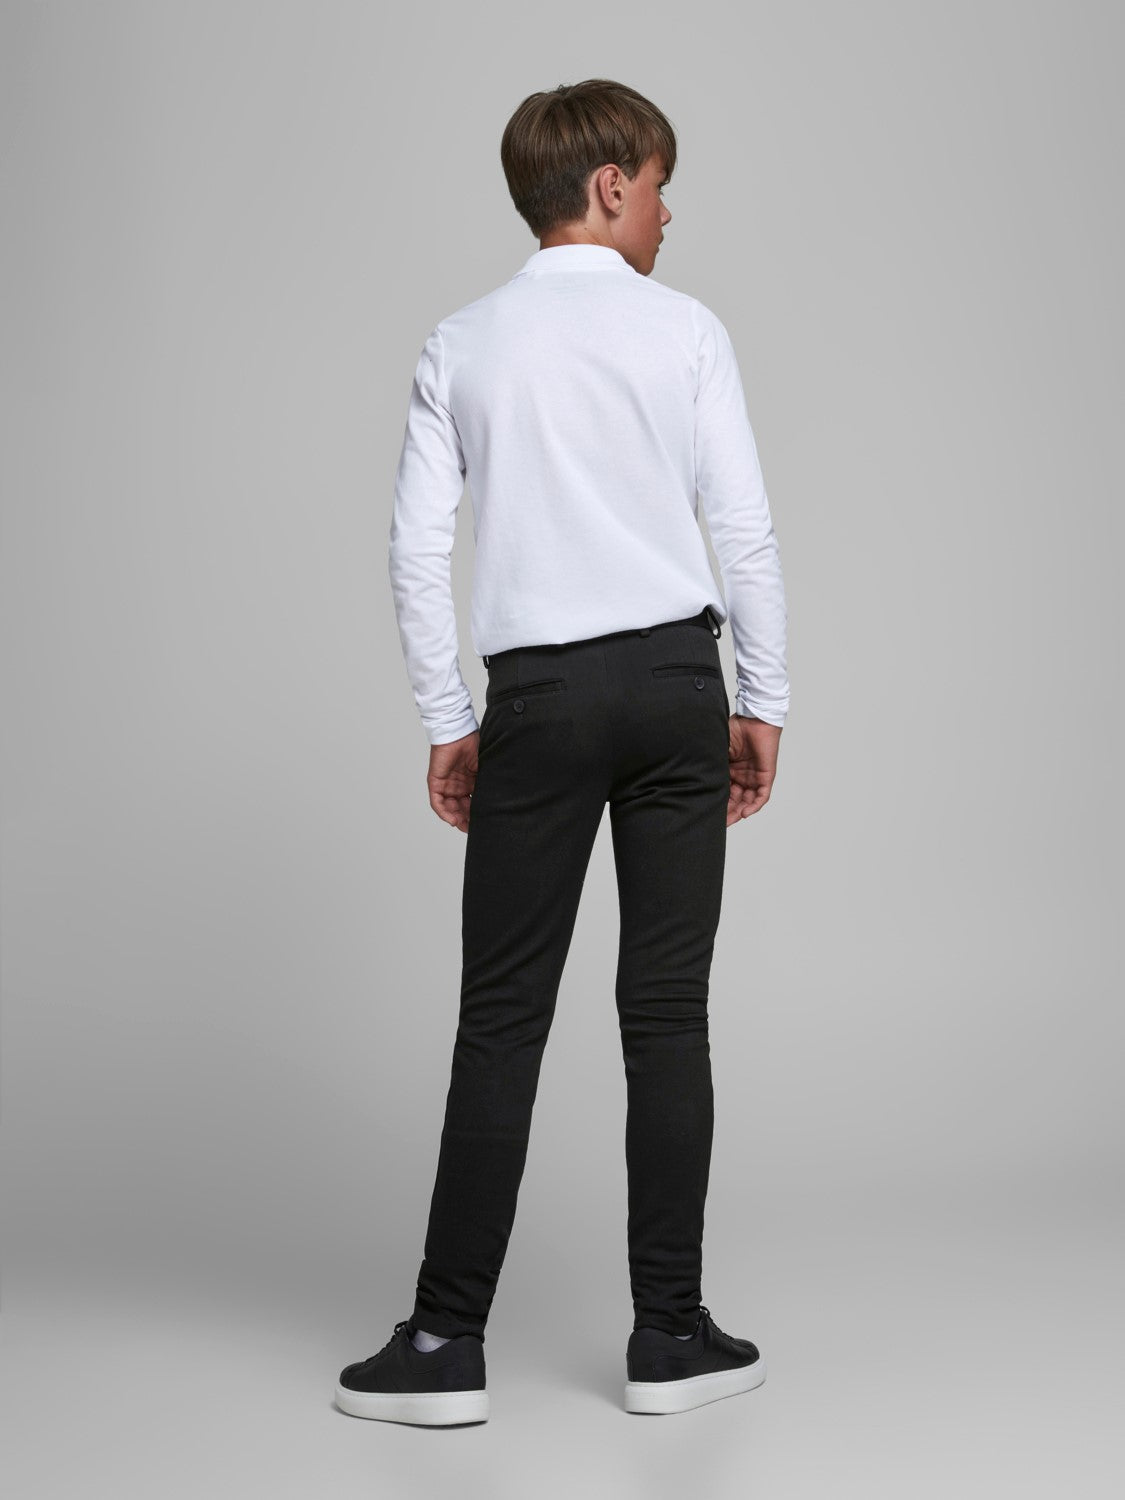 Jack & Jones Boy's Black Slim Fit Jersey Trousers